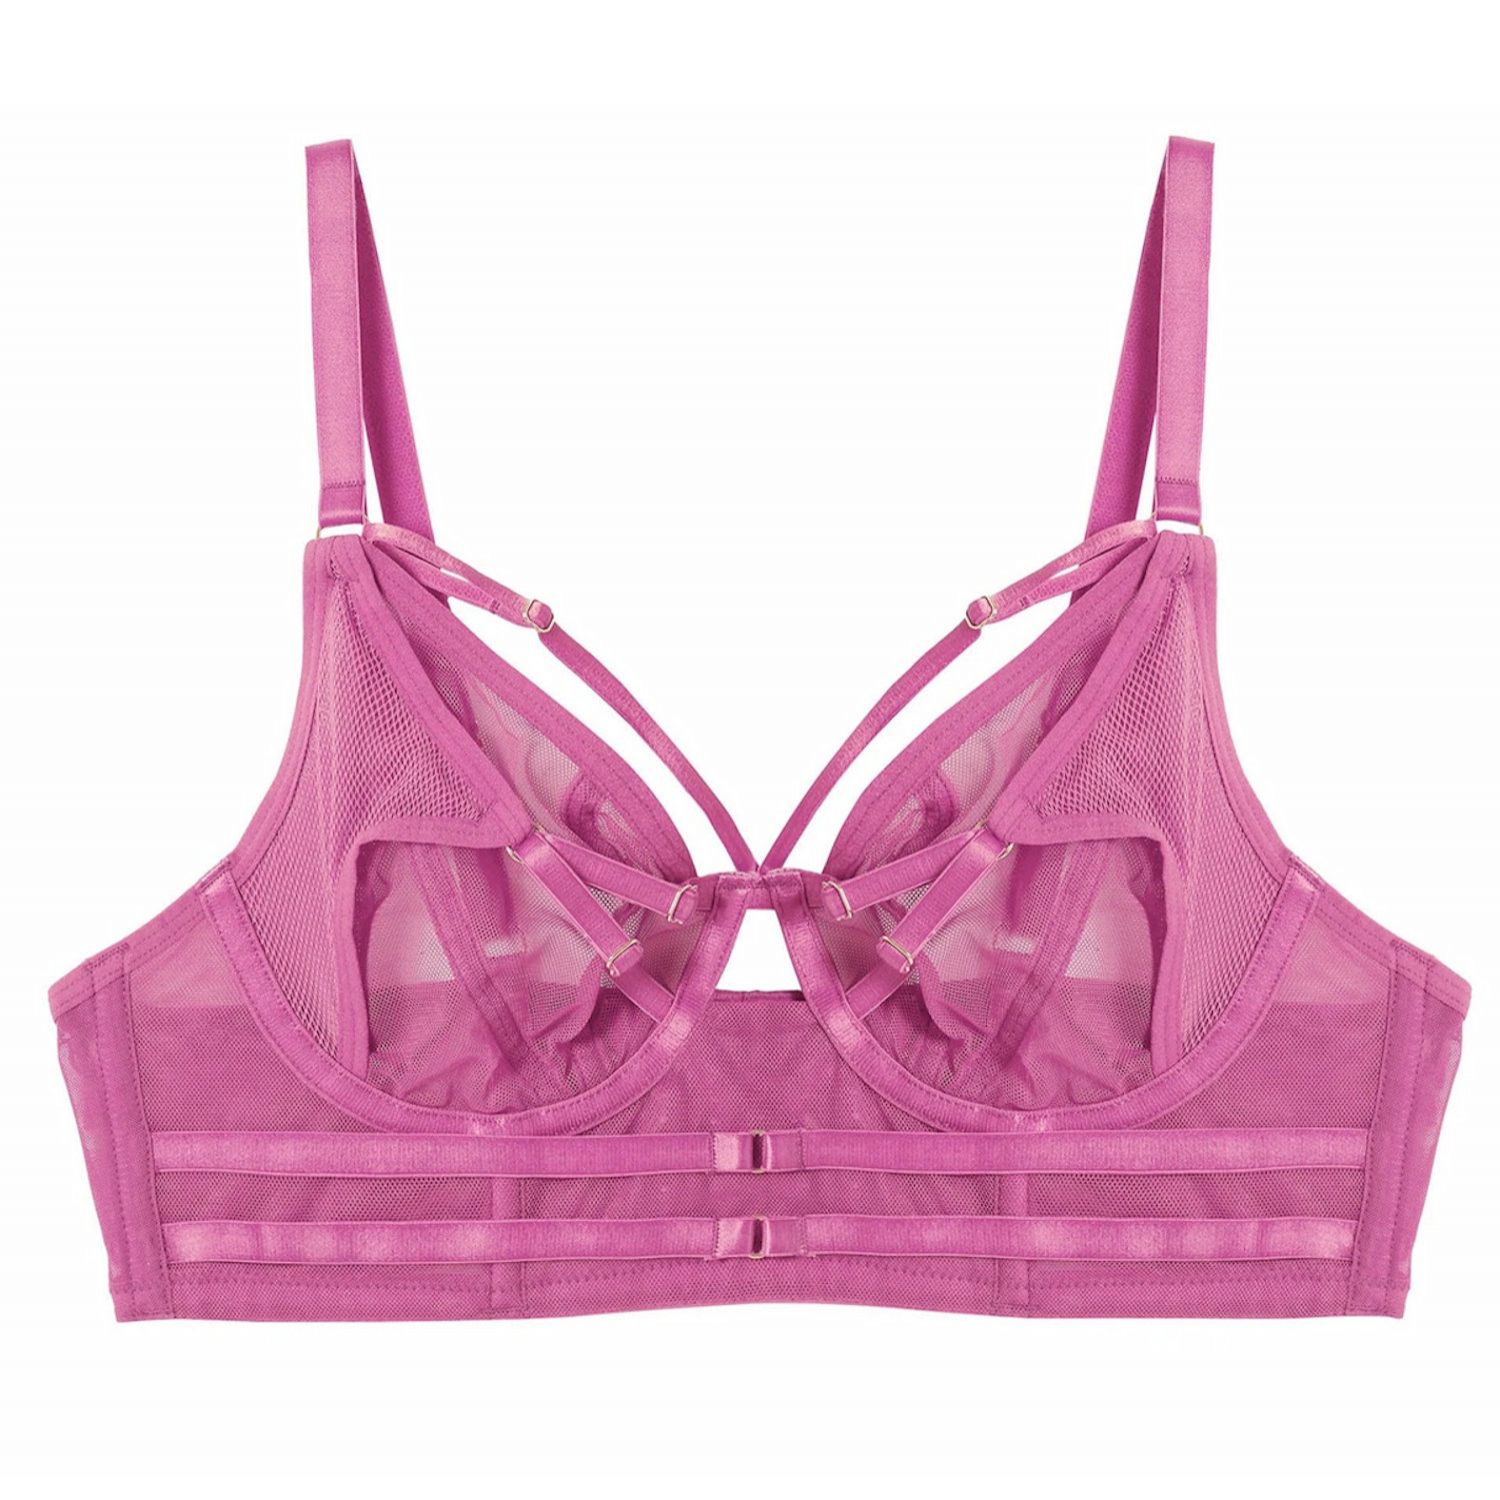 Eddie Crossover Bra Pink  Lumingerie bras and underwear for big busts